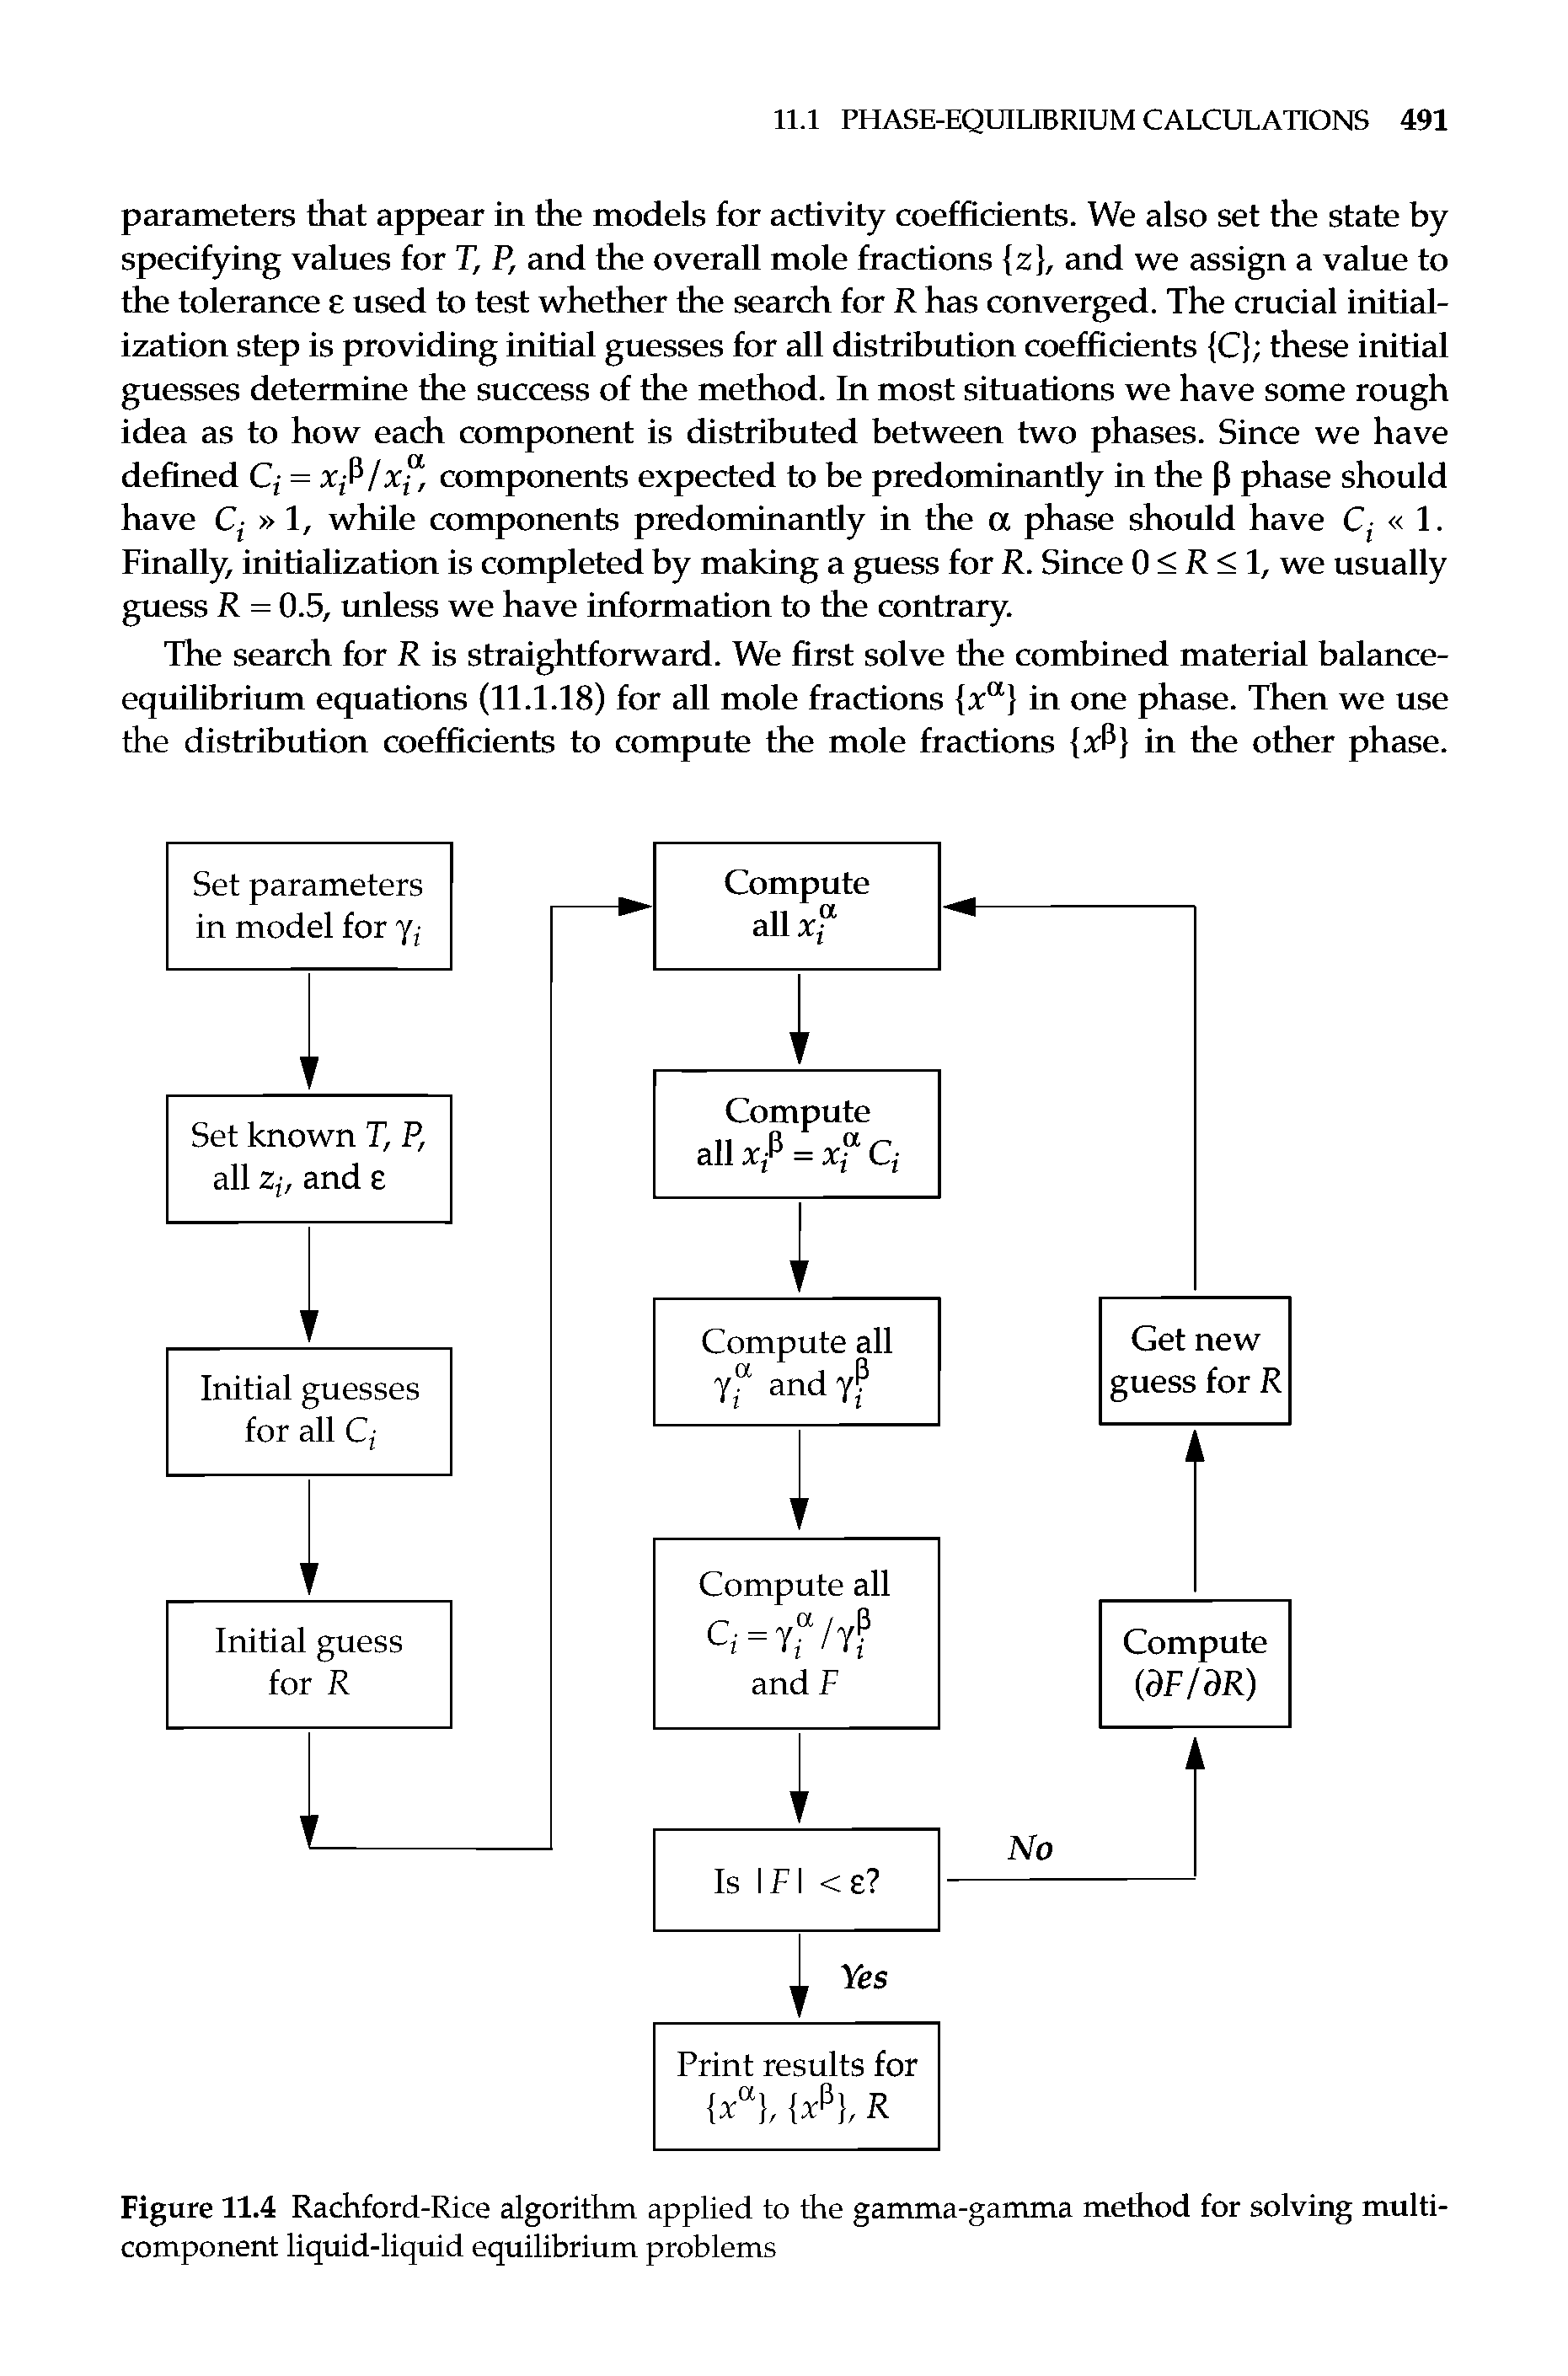 Figure 11.4 Rachford-Rice algorithm applied to the gamma-gamma method for solving multi-component liquid-liquid equilibrium problems...